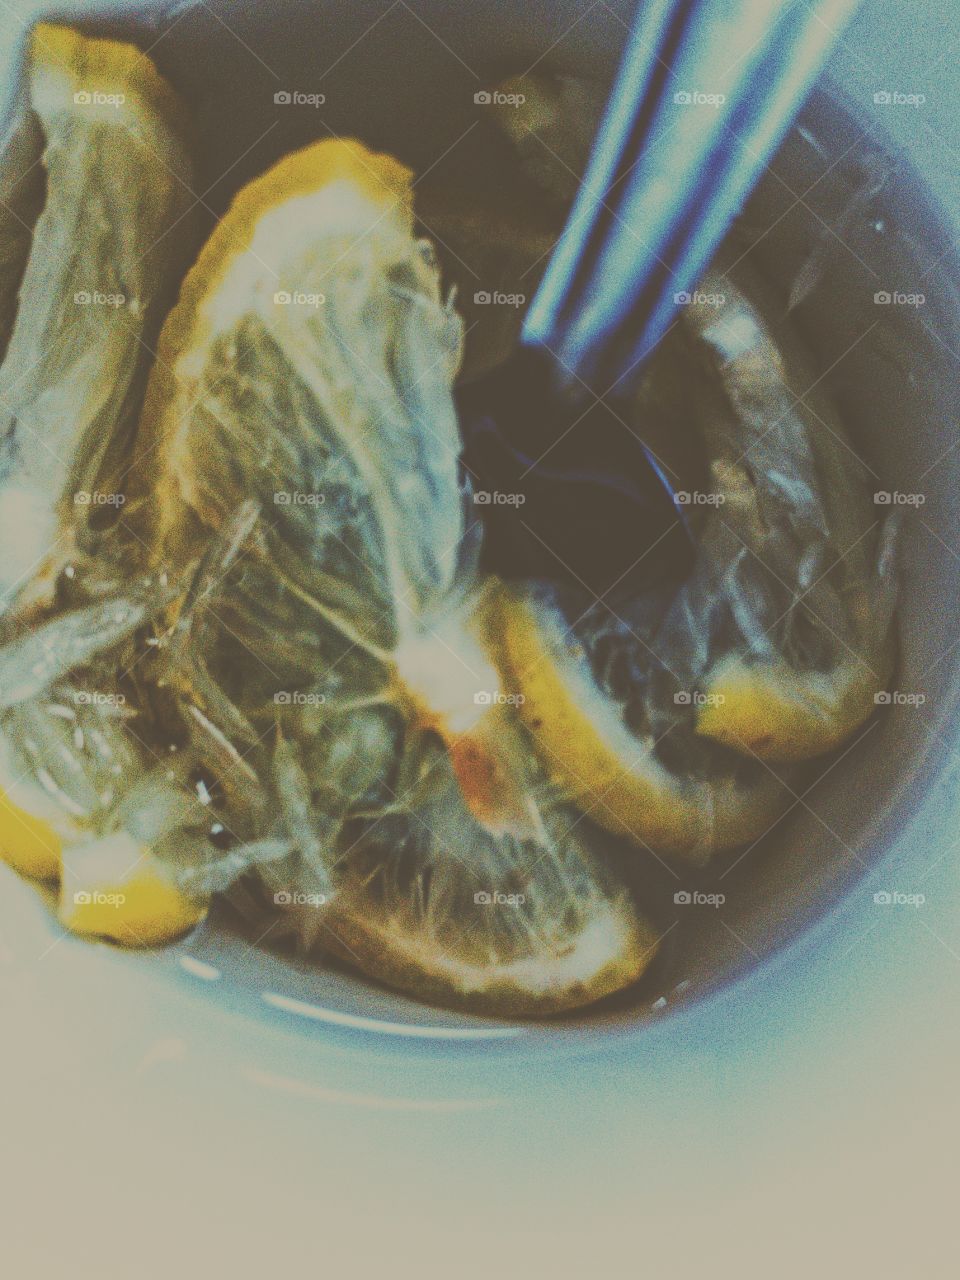 Ice lemon tea